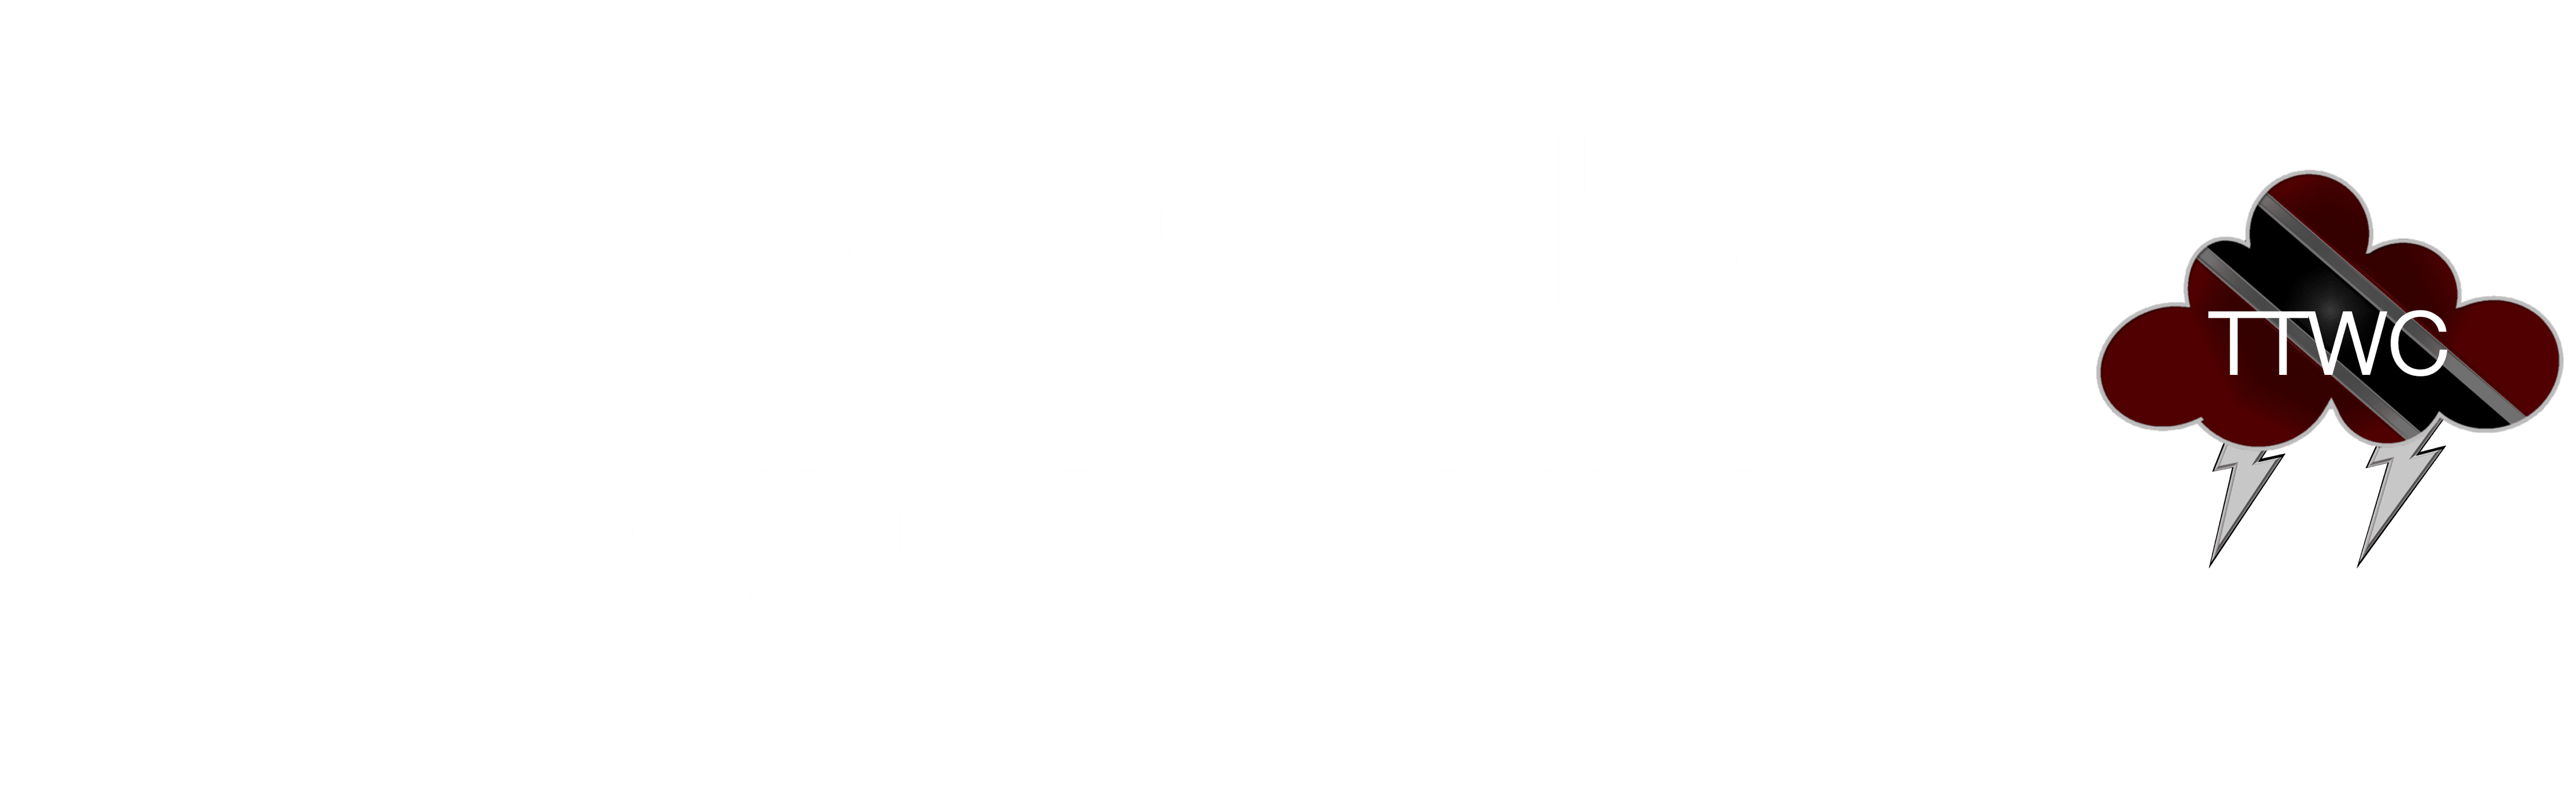 Trinidad and Tobago Weather Center